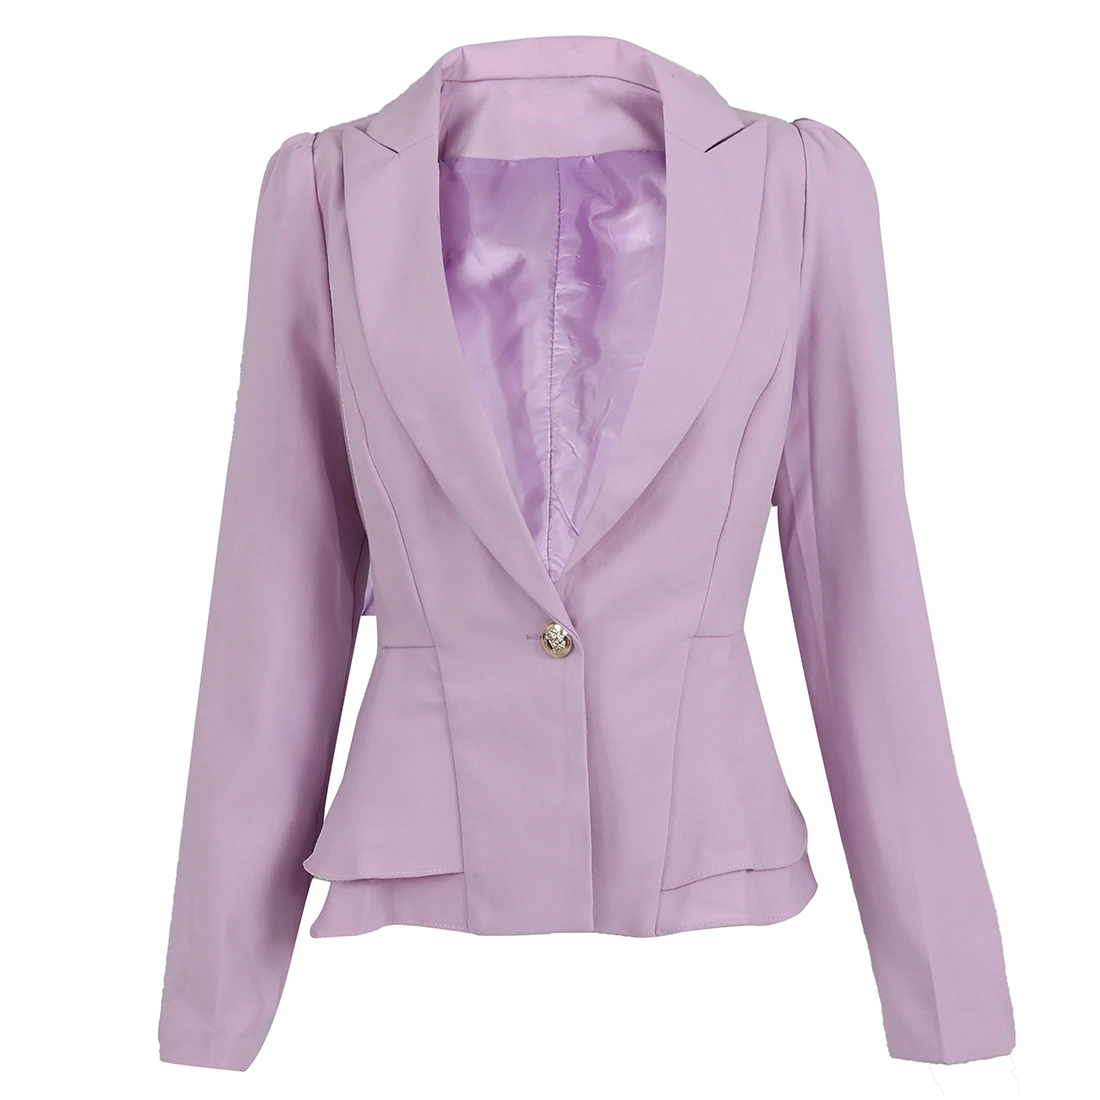 TFGS пиджак блейзер женский костюм складной длинный рукав лацкан пальто конфетный цвет Блейзер на одной пуговице куртки - Цвет: LIGHT PURPLE